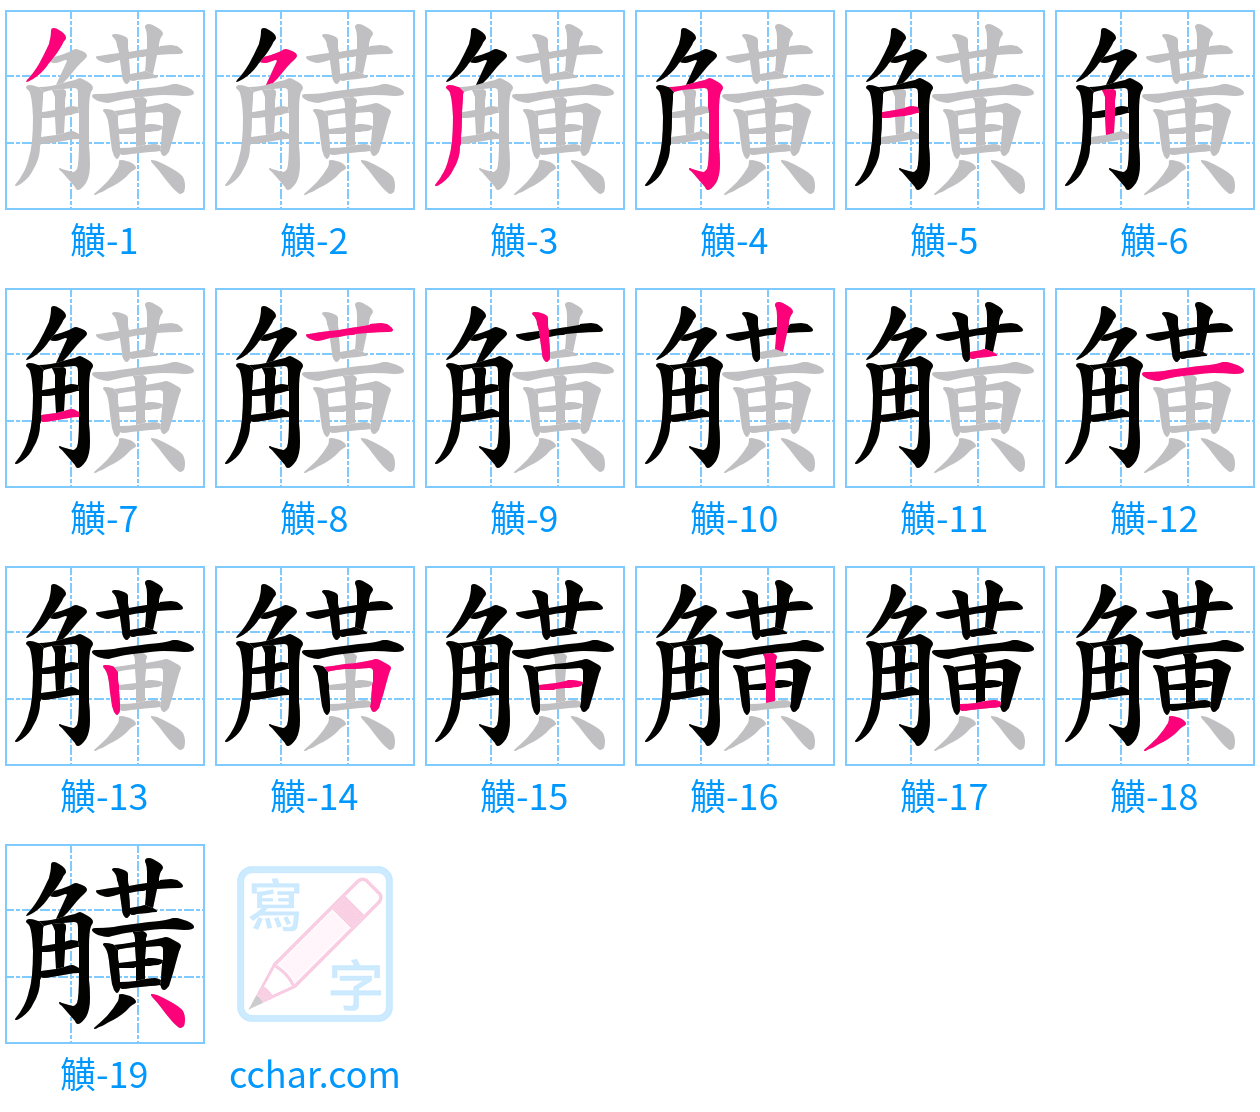 觵 stroke order step-by-step diagram